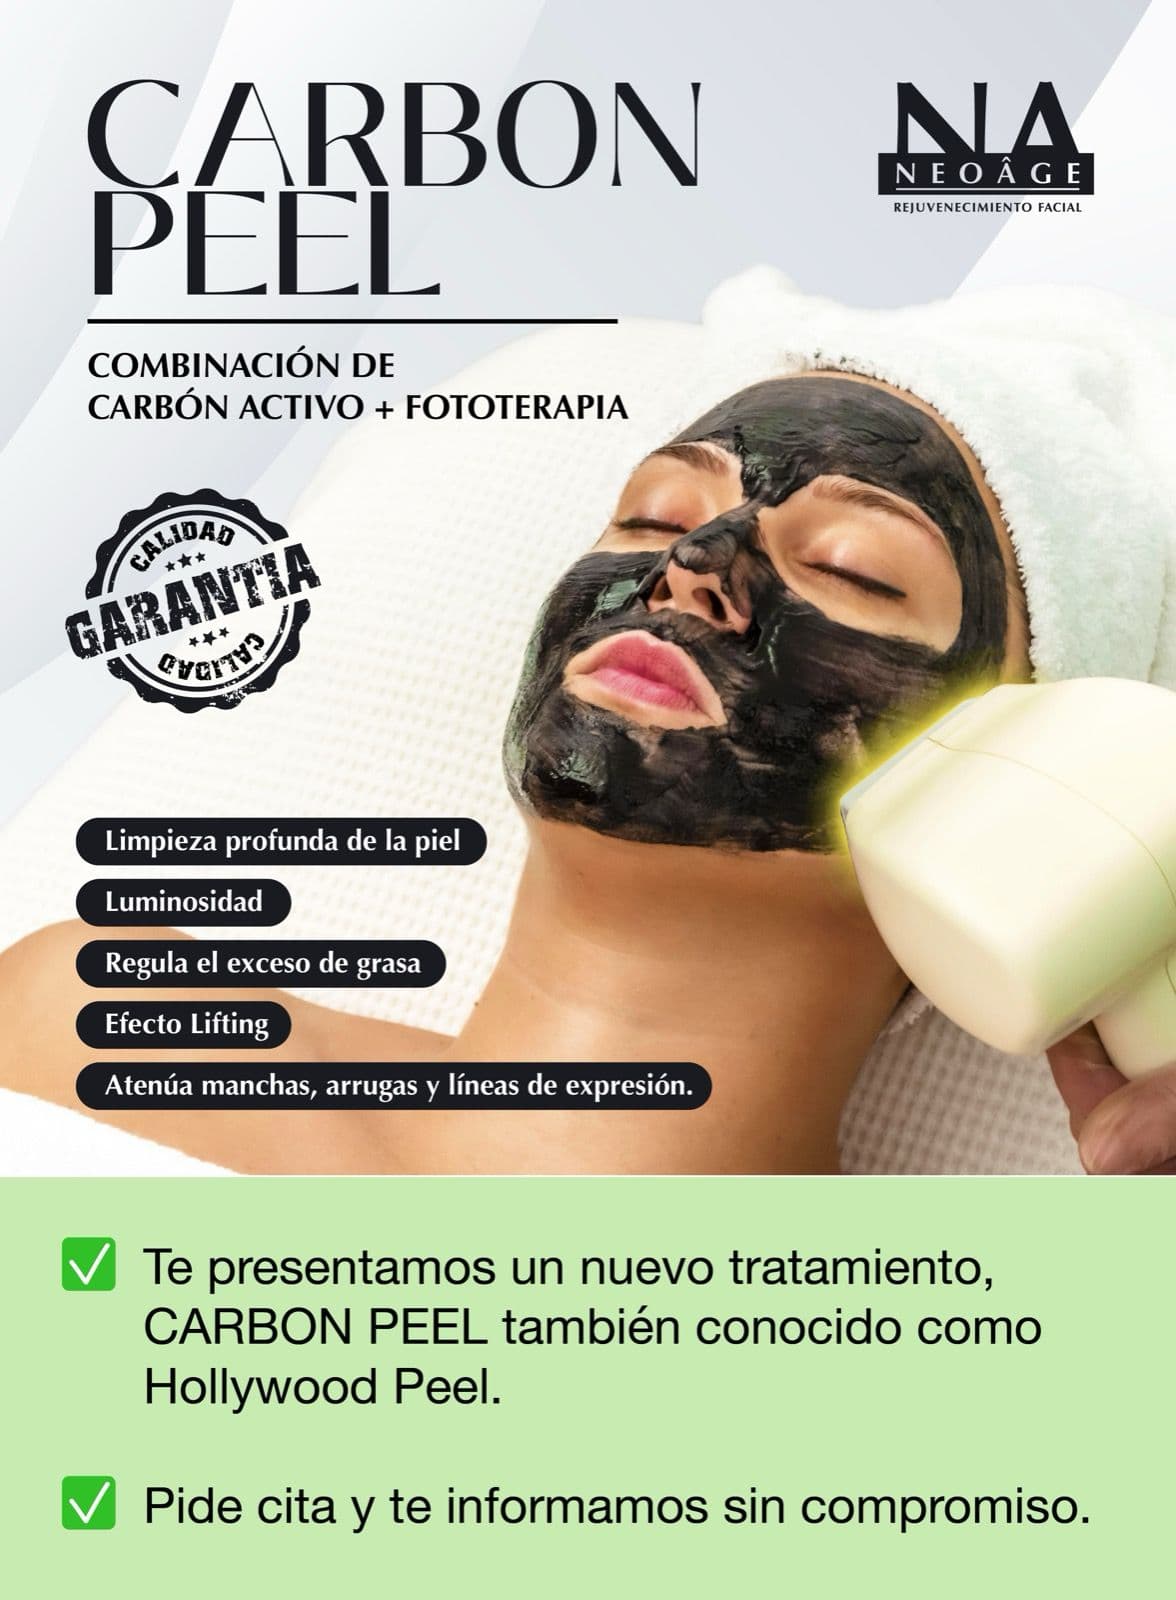 Carbon Peel: ¡consigue una limpieza profunda de la piel!